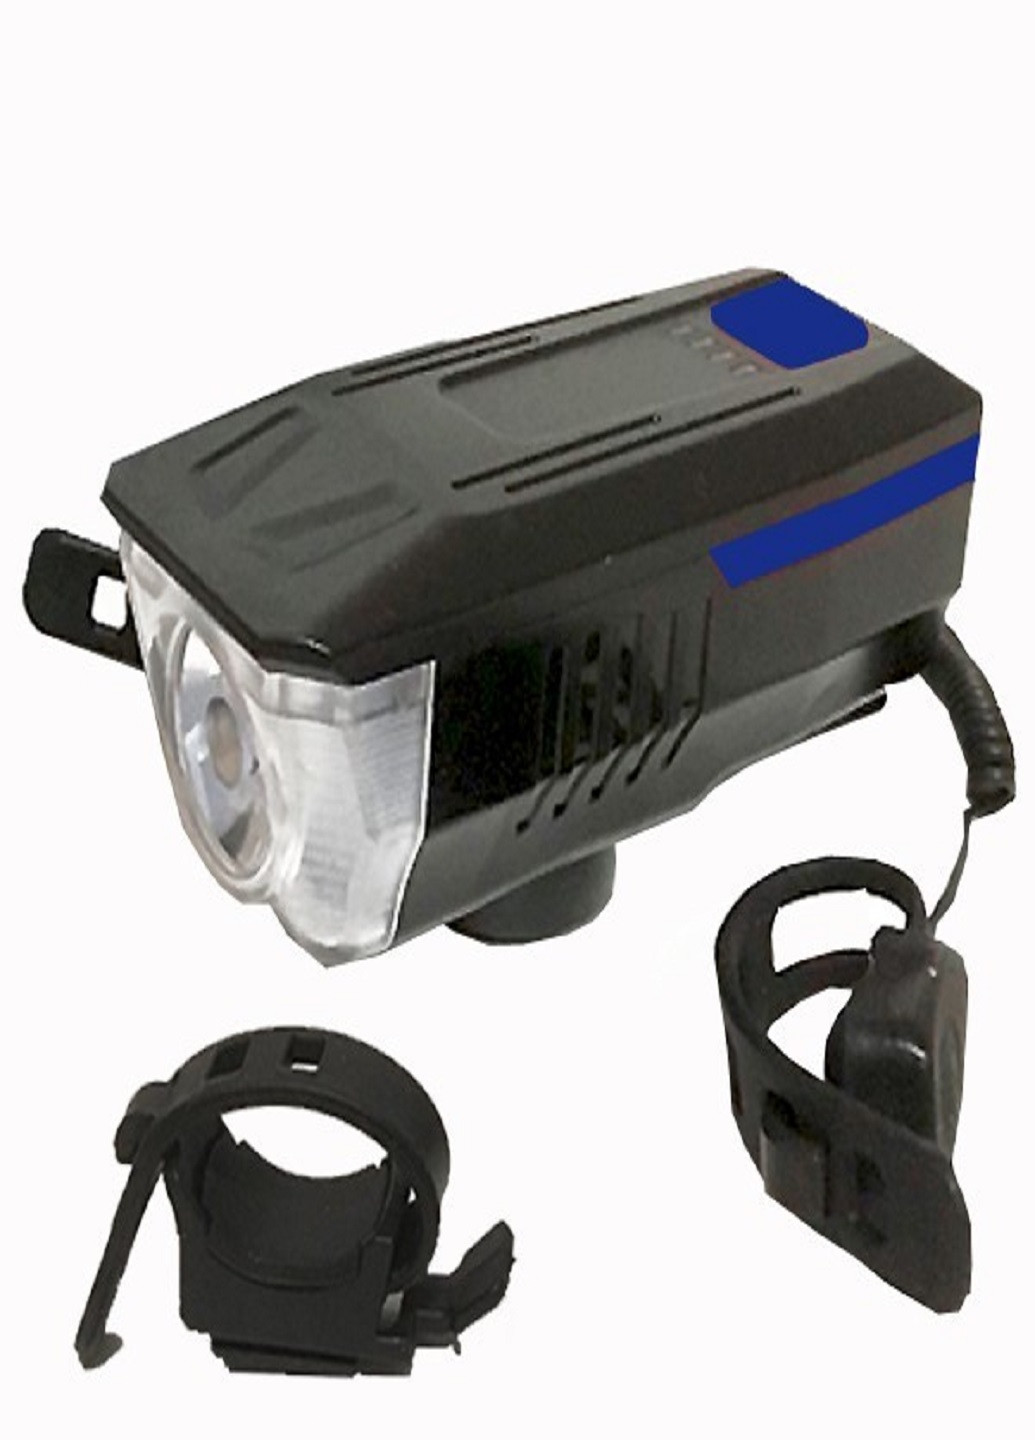 Универсальный аккумуляторный фонарь велосипедный LY-16 влагостойкий со звонком с креплением на руль Синий VTech (253495649)